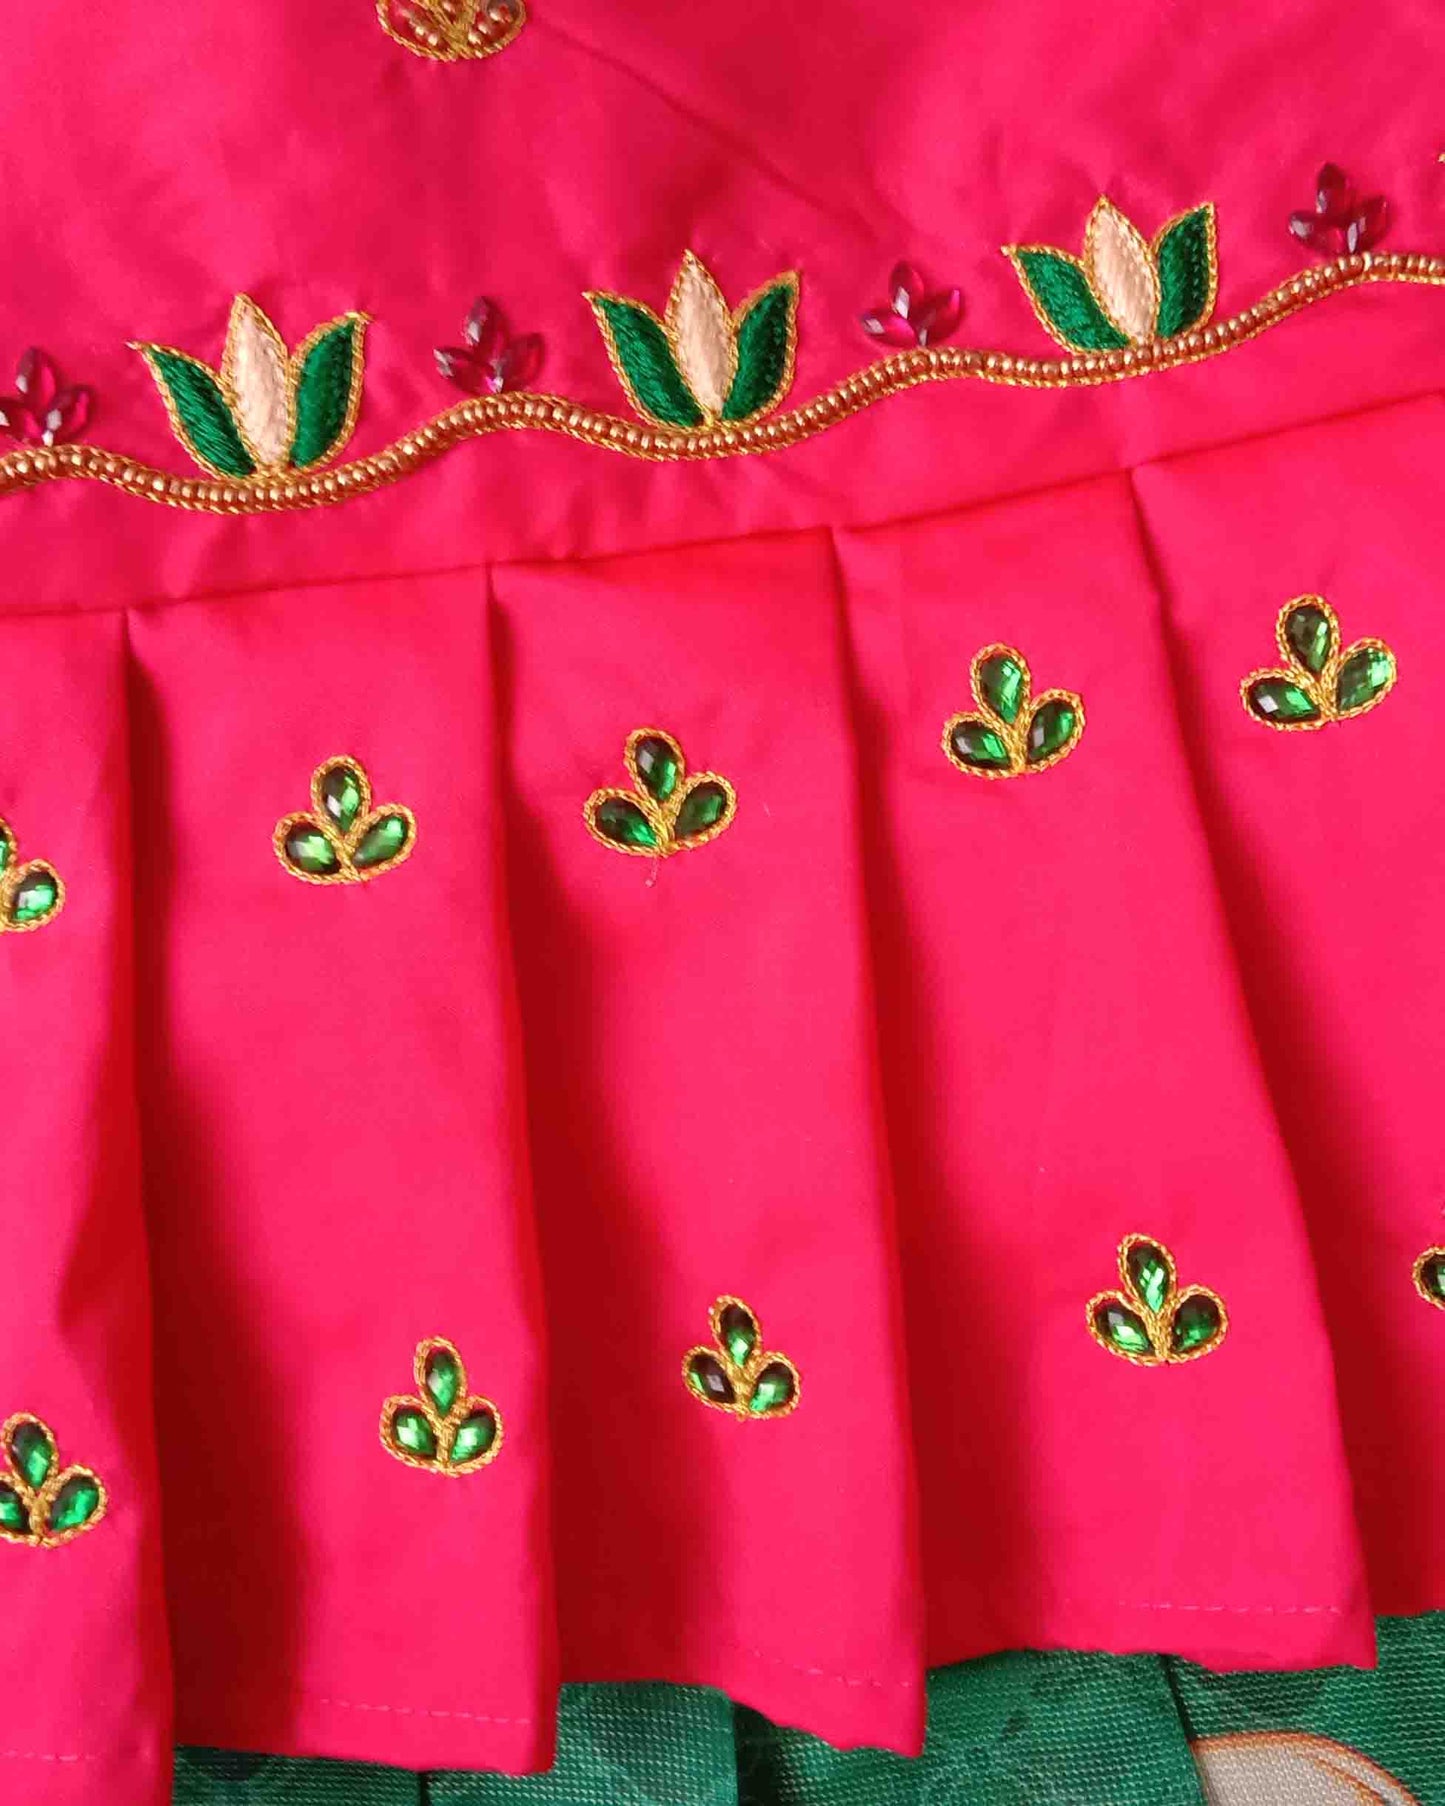 Prince N Princess Green Pink Kalamkari AARI Work pattu Pavadai PPP1243